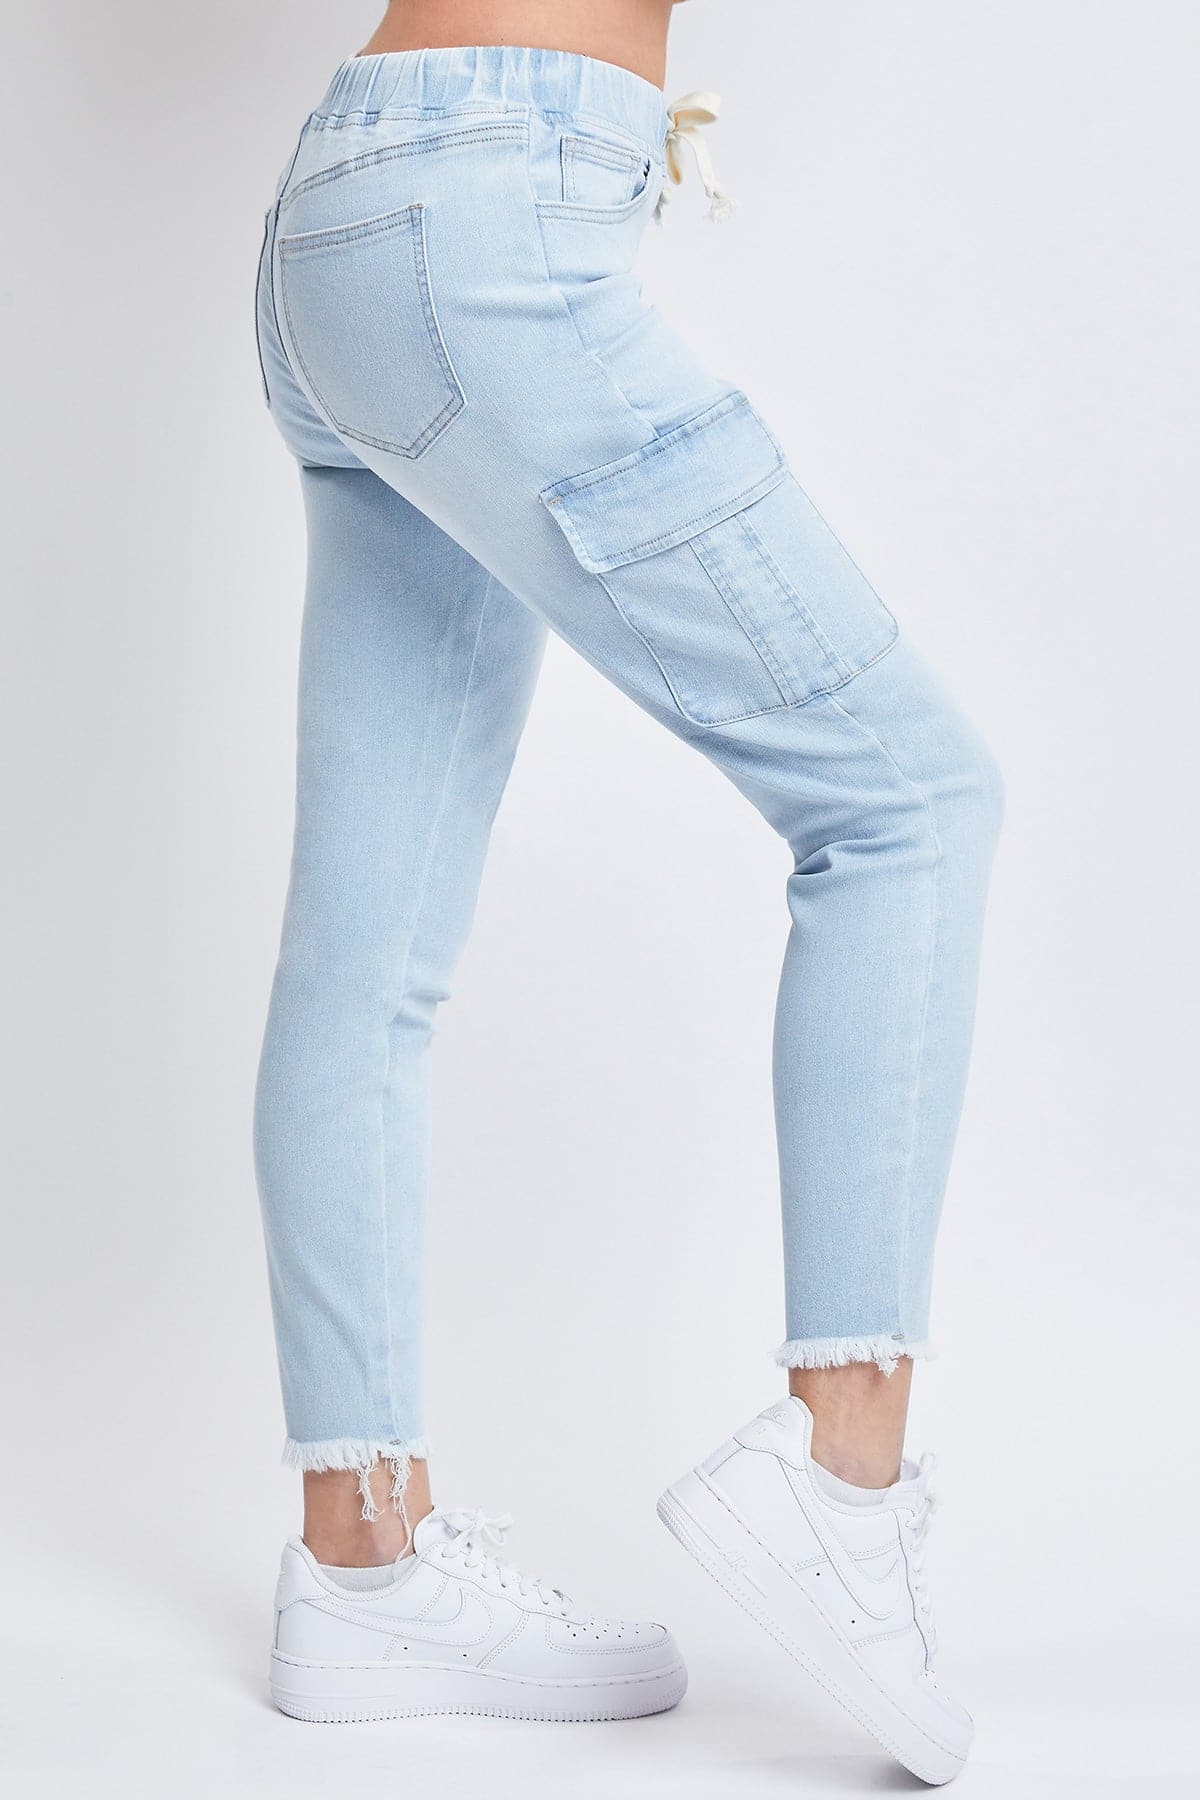 Women's Skinny Cargo Jeans